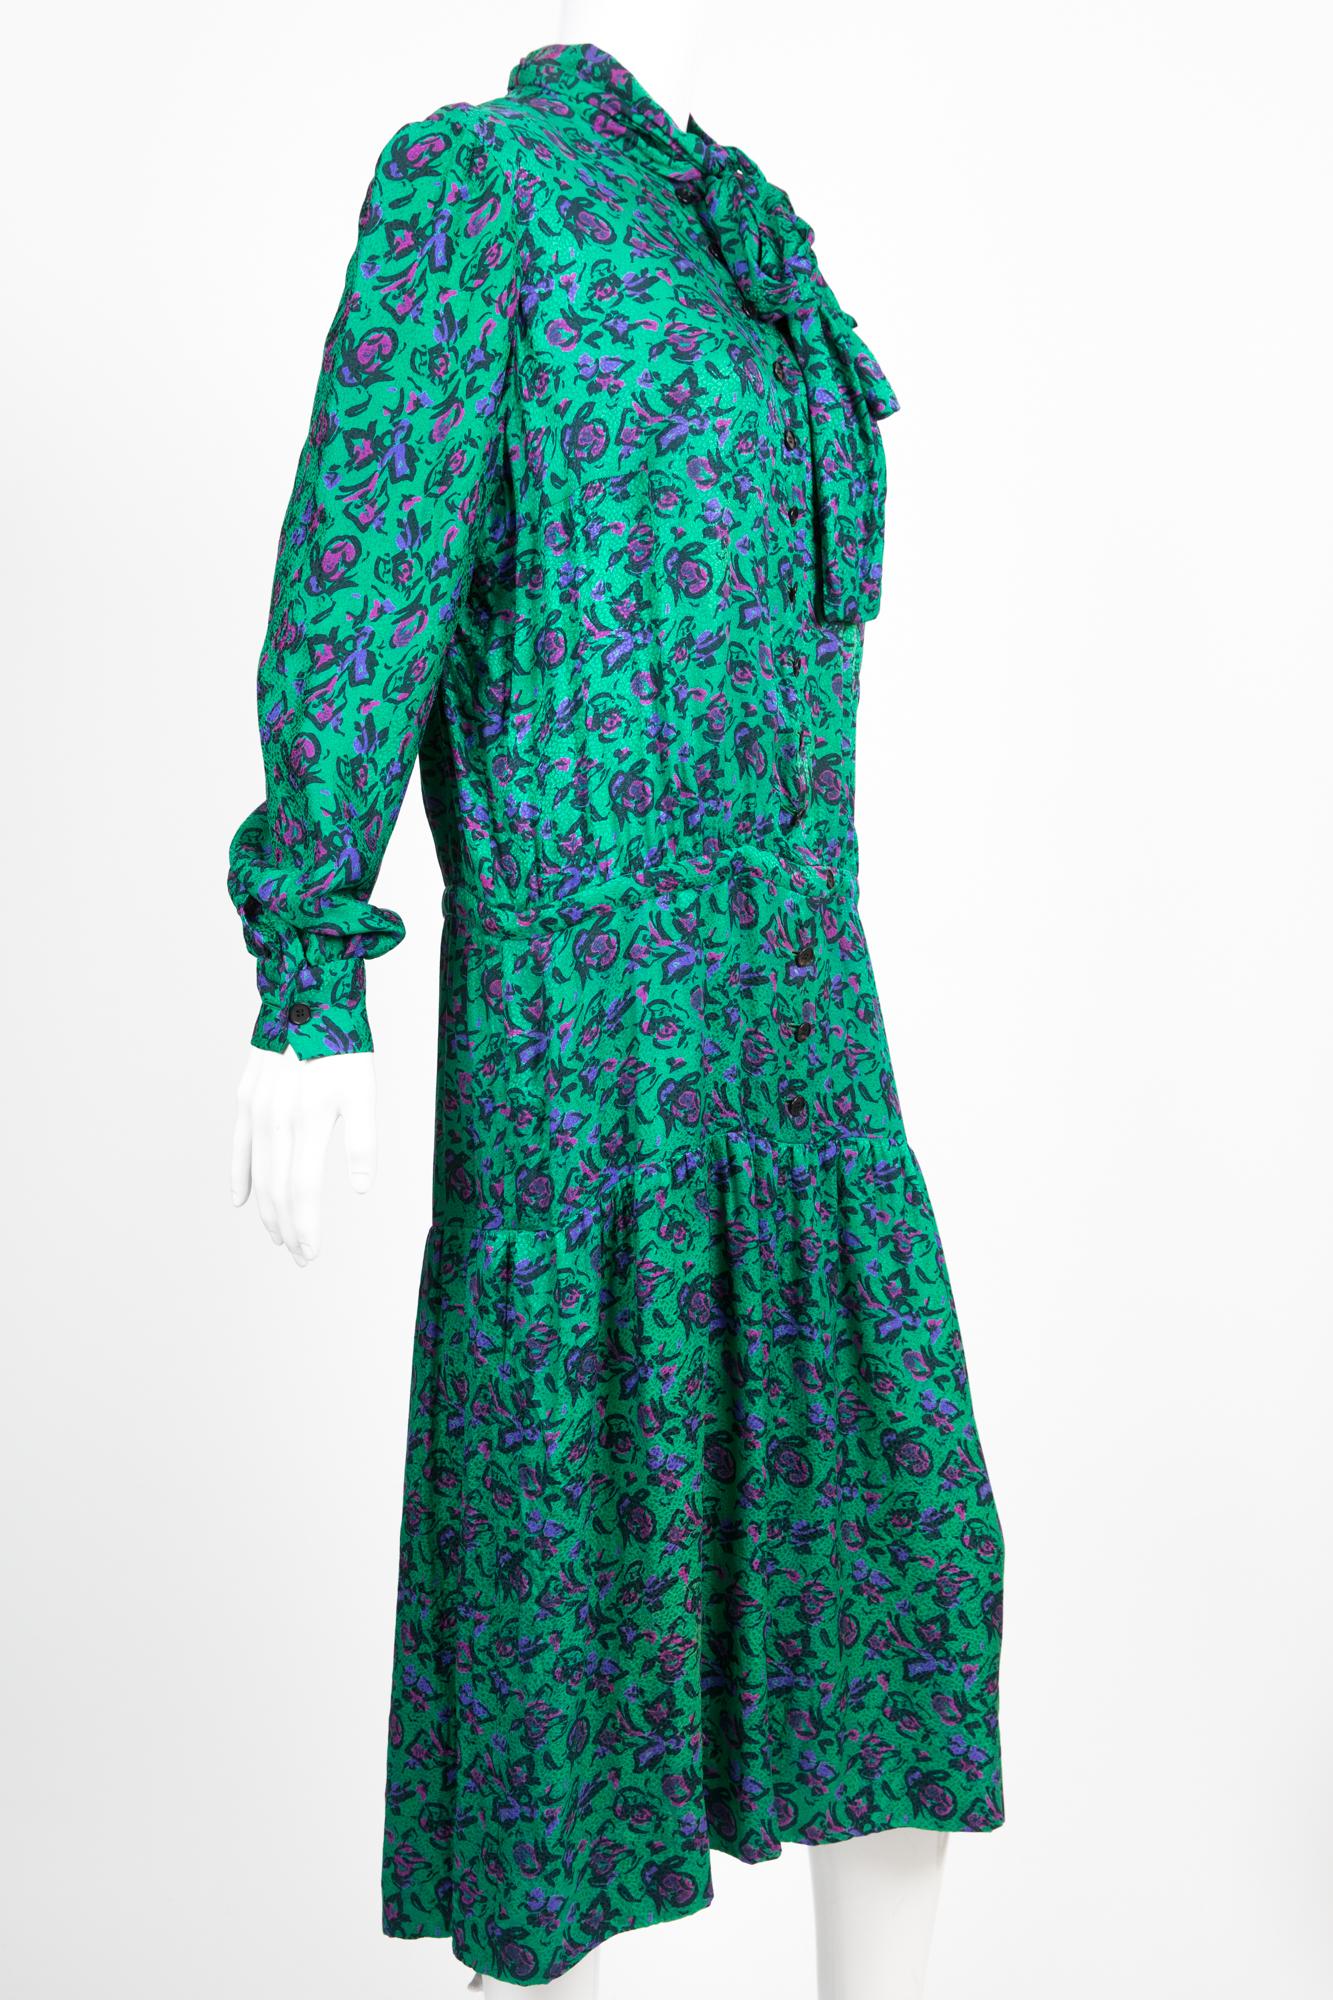 Robe Lanvin Haute Couture avec fermeture boutonnée sur le devant de la poitrine, lien lavallière à l'encolure, fond en jacquard de soie vert à imprimé floral.
Composition : 100 % soie
Circa 1975 Pièce numérotée : 1386CB par Jules François